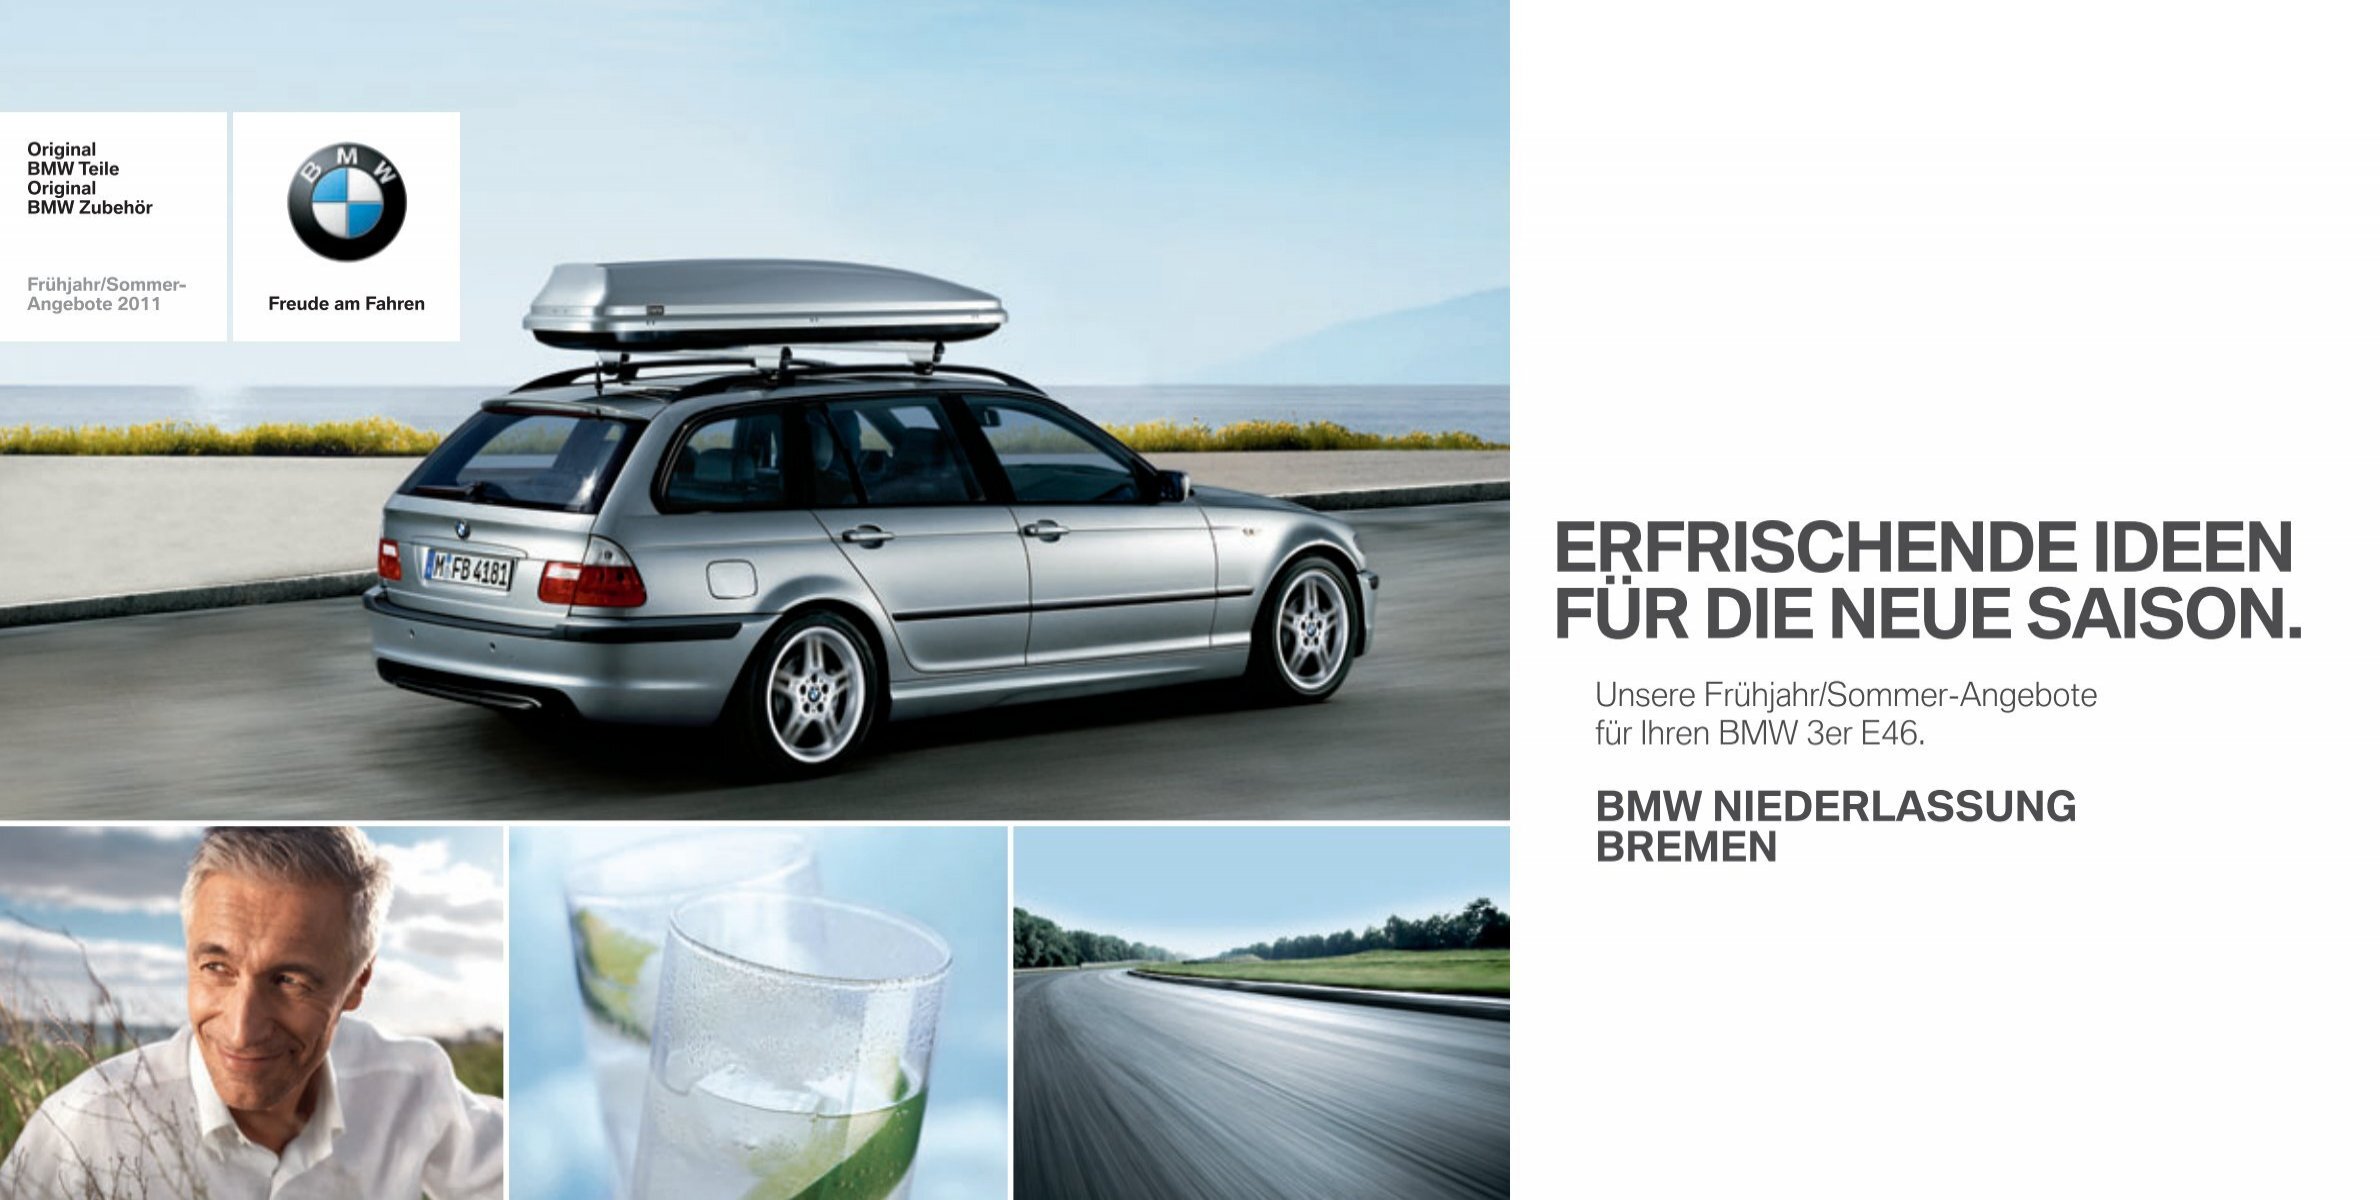 Original BMW Zubehör: Frühling und Sommer